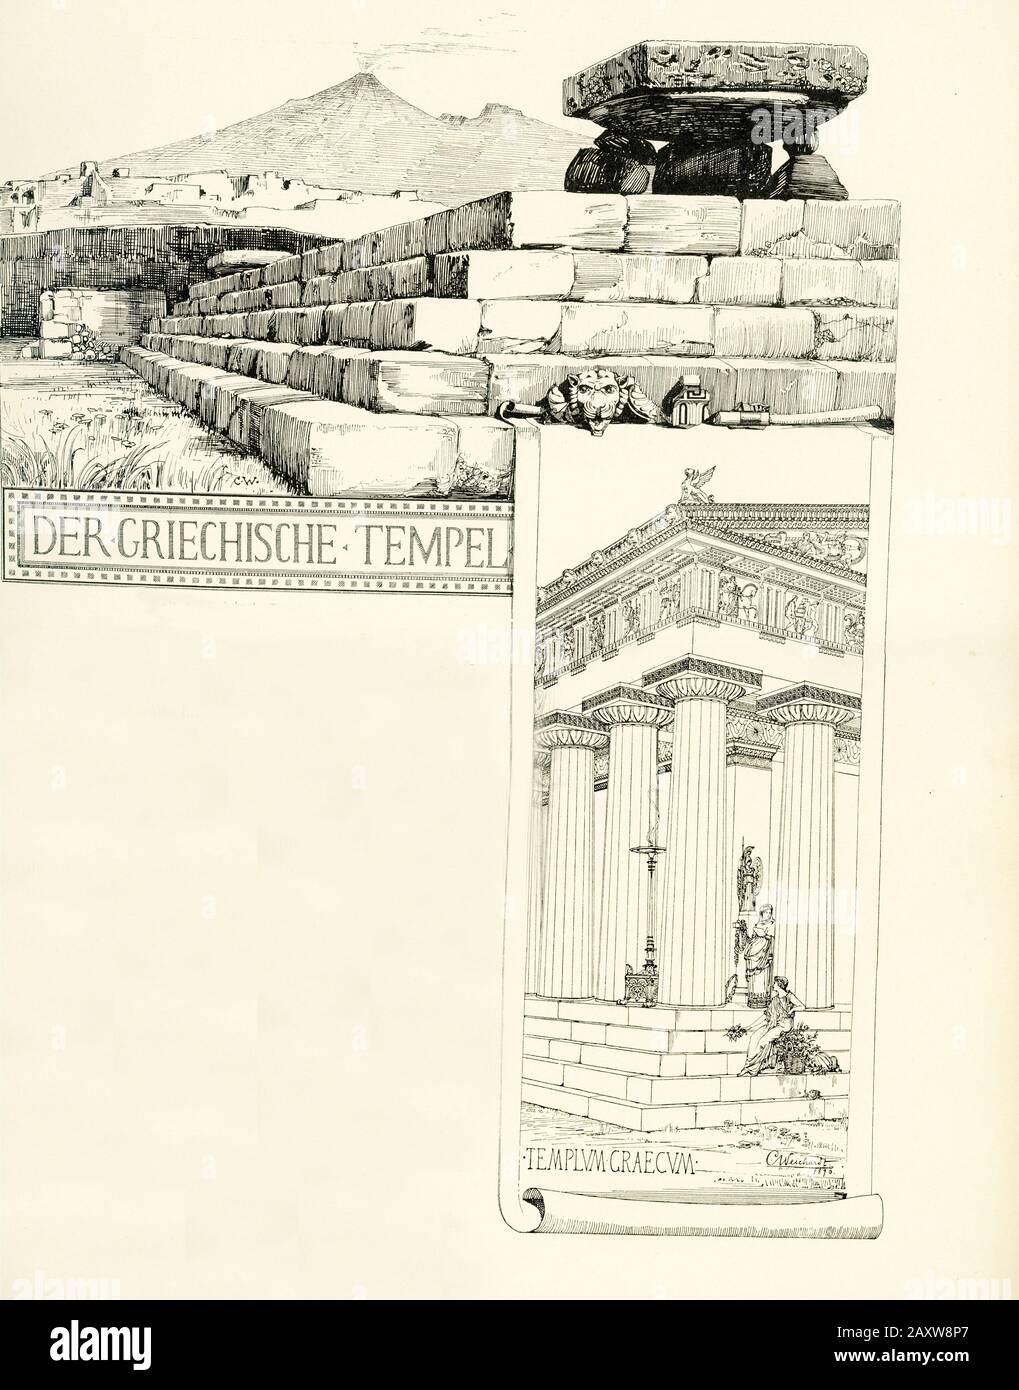 Cette illustration a été réalisée par Karl Weichardt (1846-1906), architecte allemand et peintre architectural. Il montre un ancien temple grec à Pompéi, la ville romaine détruite en 79 A.D. dans l'éruption du Vésuve. Banque D'Images